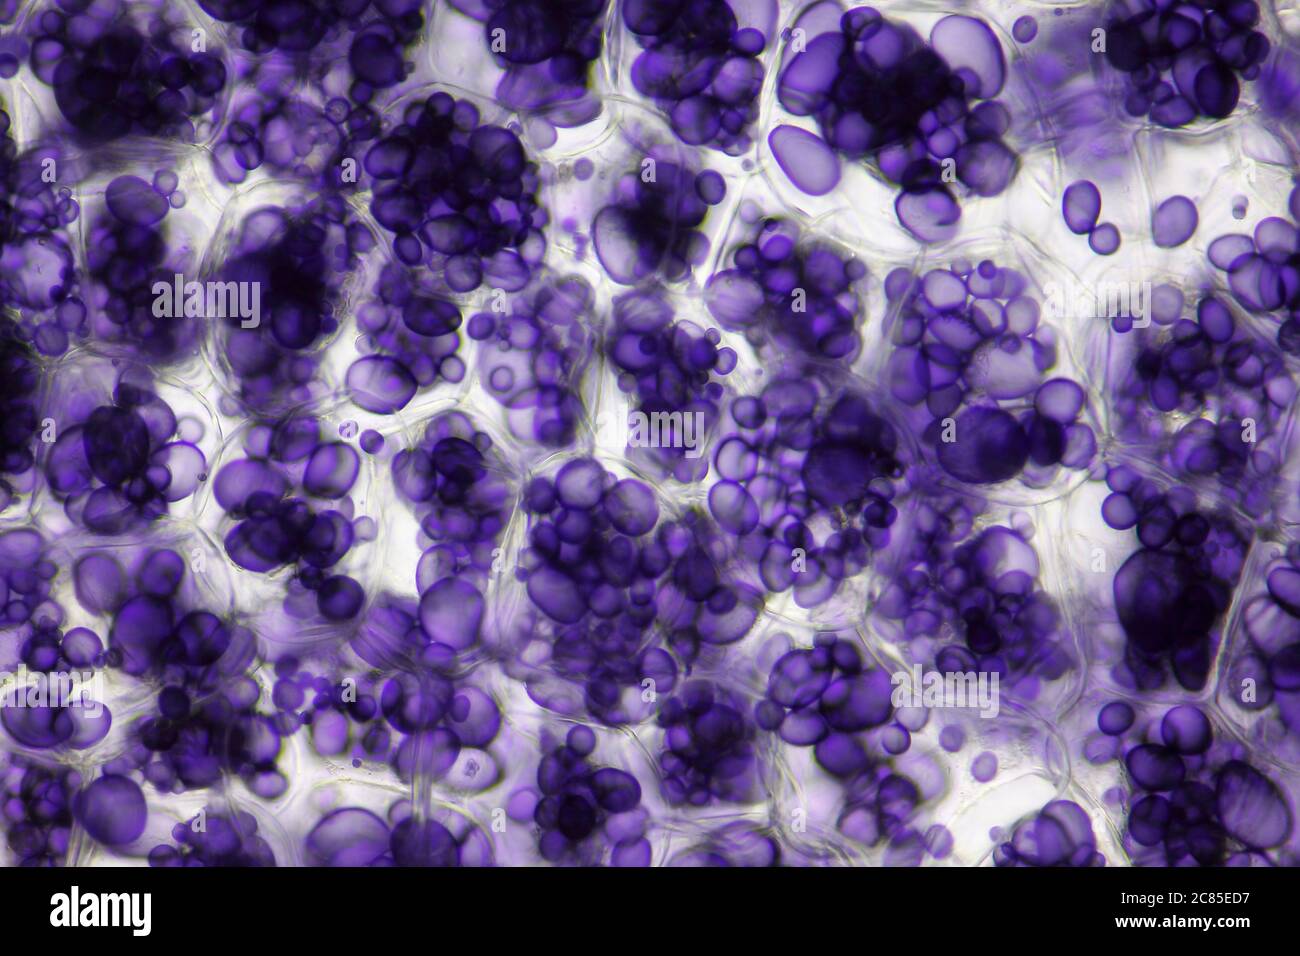 Microscopic view of a potato starch in potato tuber cells. Iodine stain. Brightfield illumination. Stock Photo